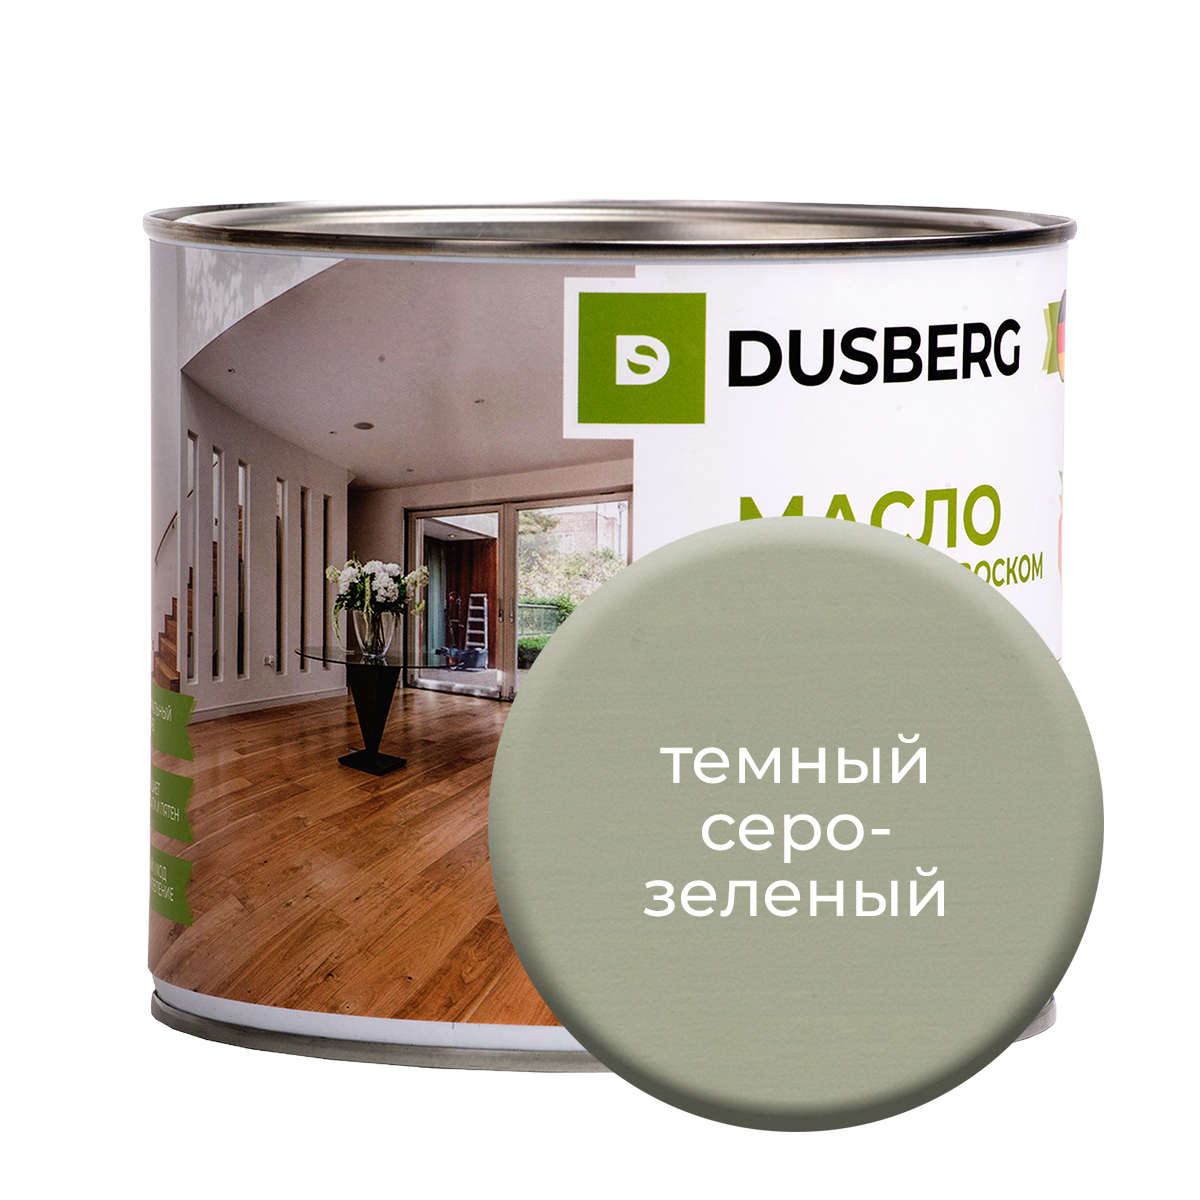 Масло Dusberg с твердым воском на бесцветной основе, 2 л Темный серо-зеленый